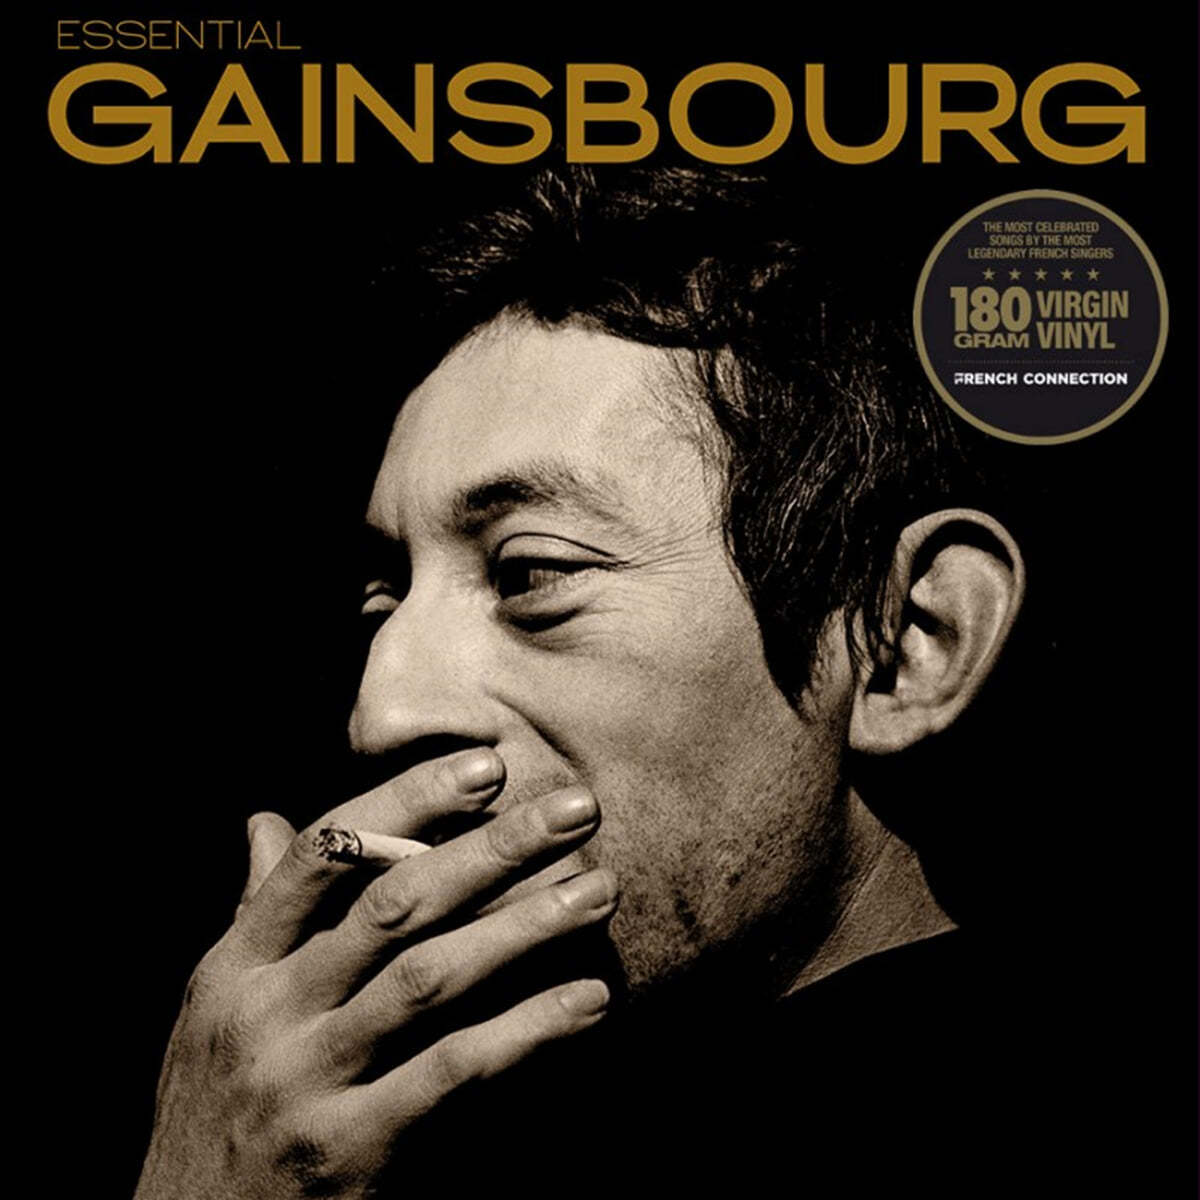 에센셜 세르쥬 갱스부르 (Essential Serge Gainsbourg) [LP] 